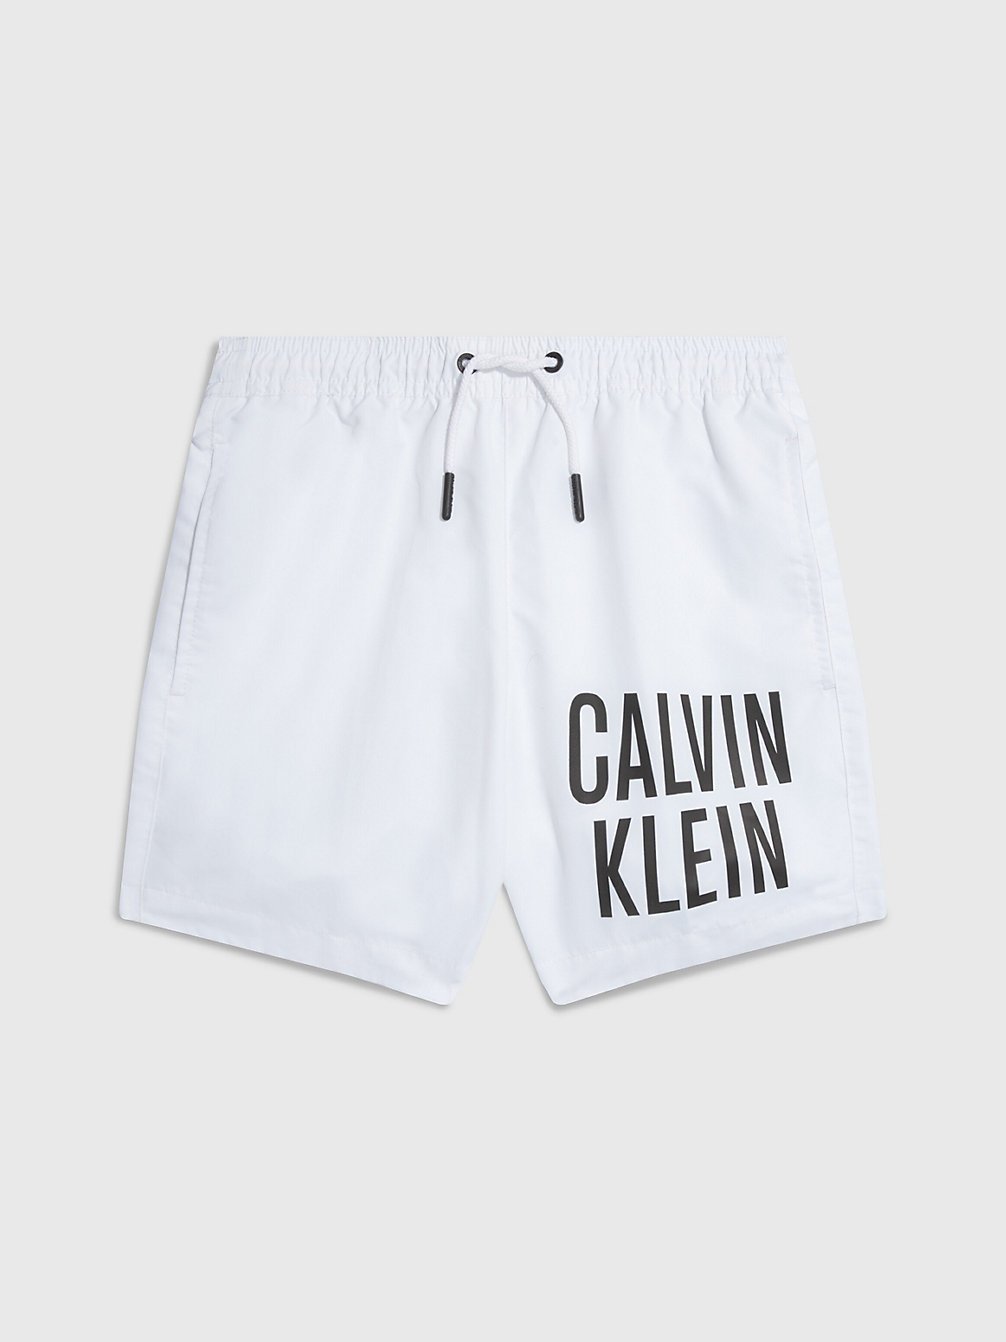 PVH CLASSIC WHITE Badeshorts Für Jungen - Intense Power undefined Jungen Calvin Klein